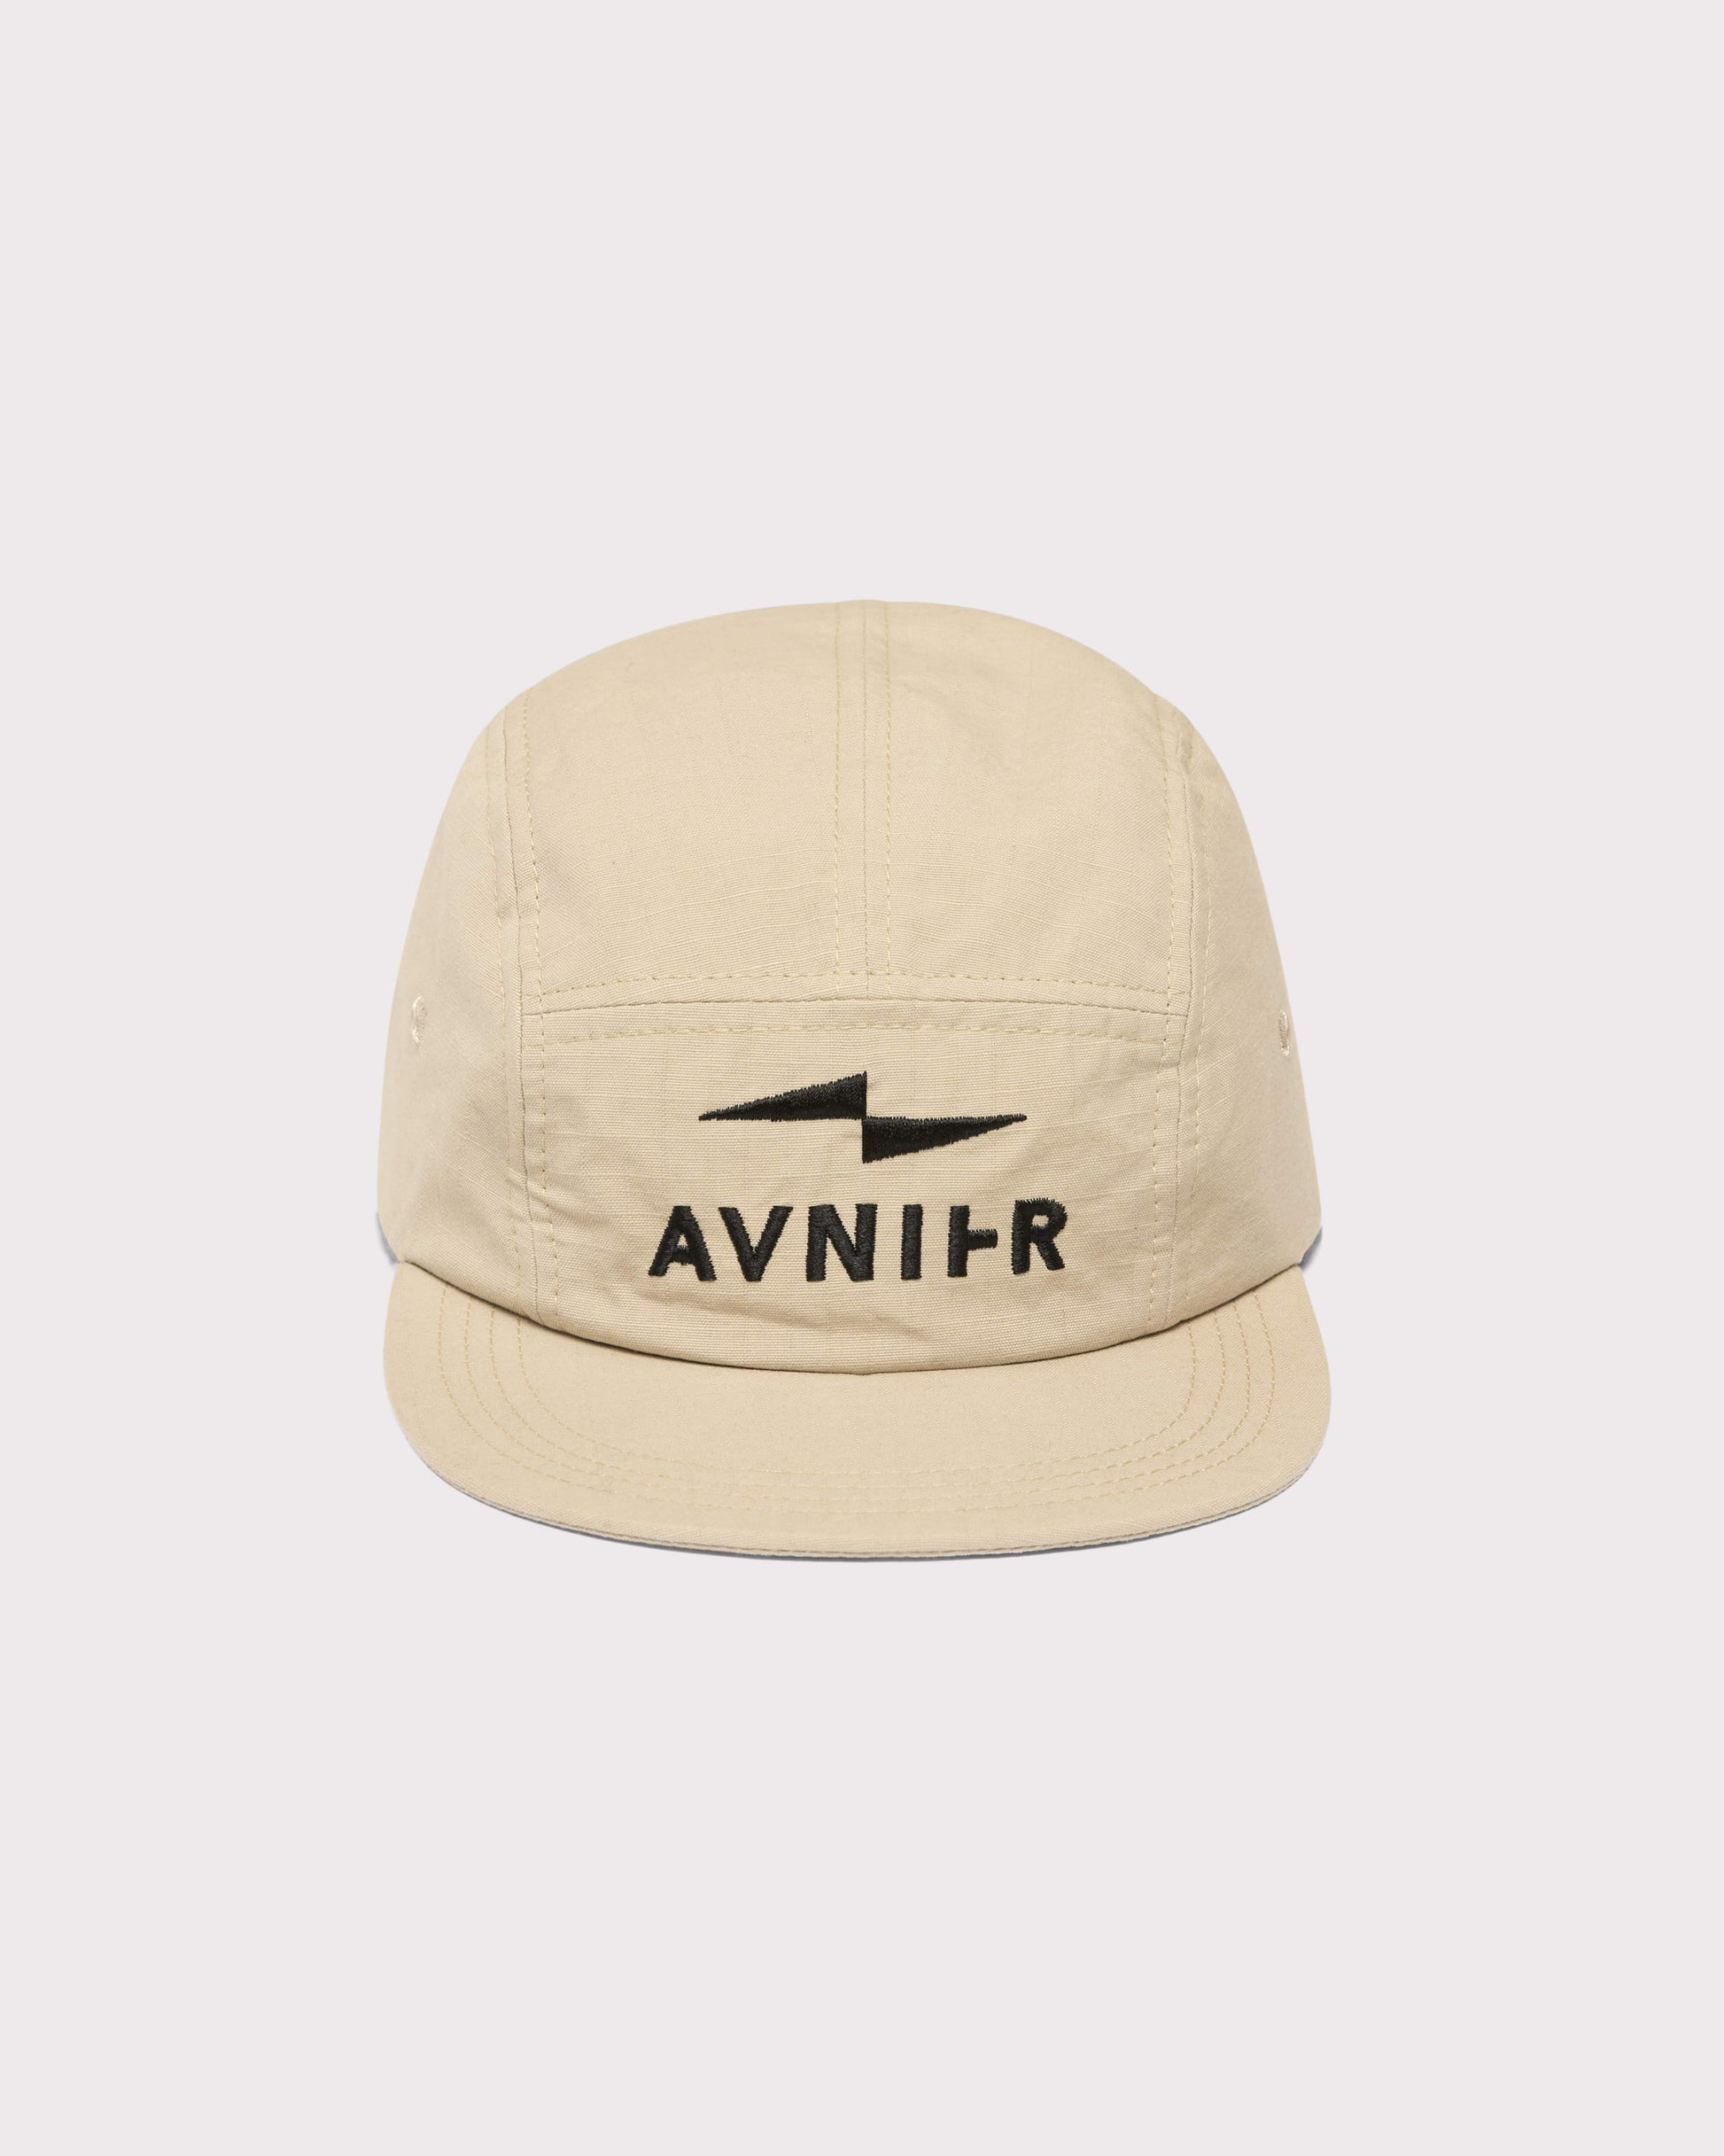 cap-repeat-feather-gray-v2-avnier-avenier-2-packshot-face1 - beige travertin